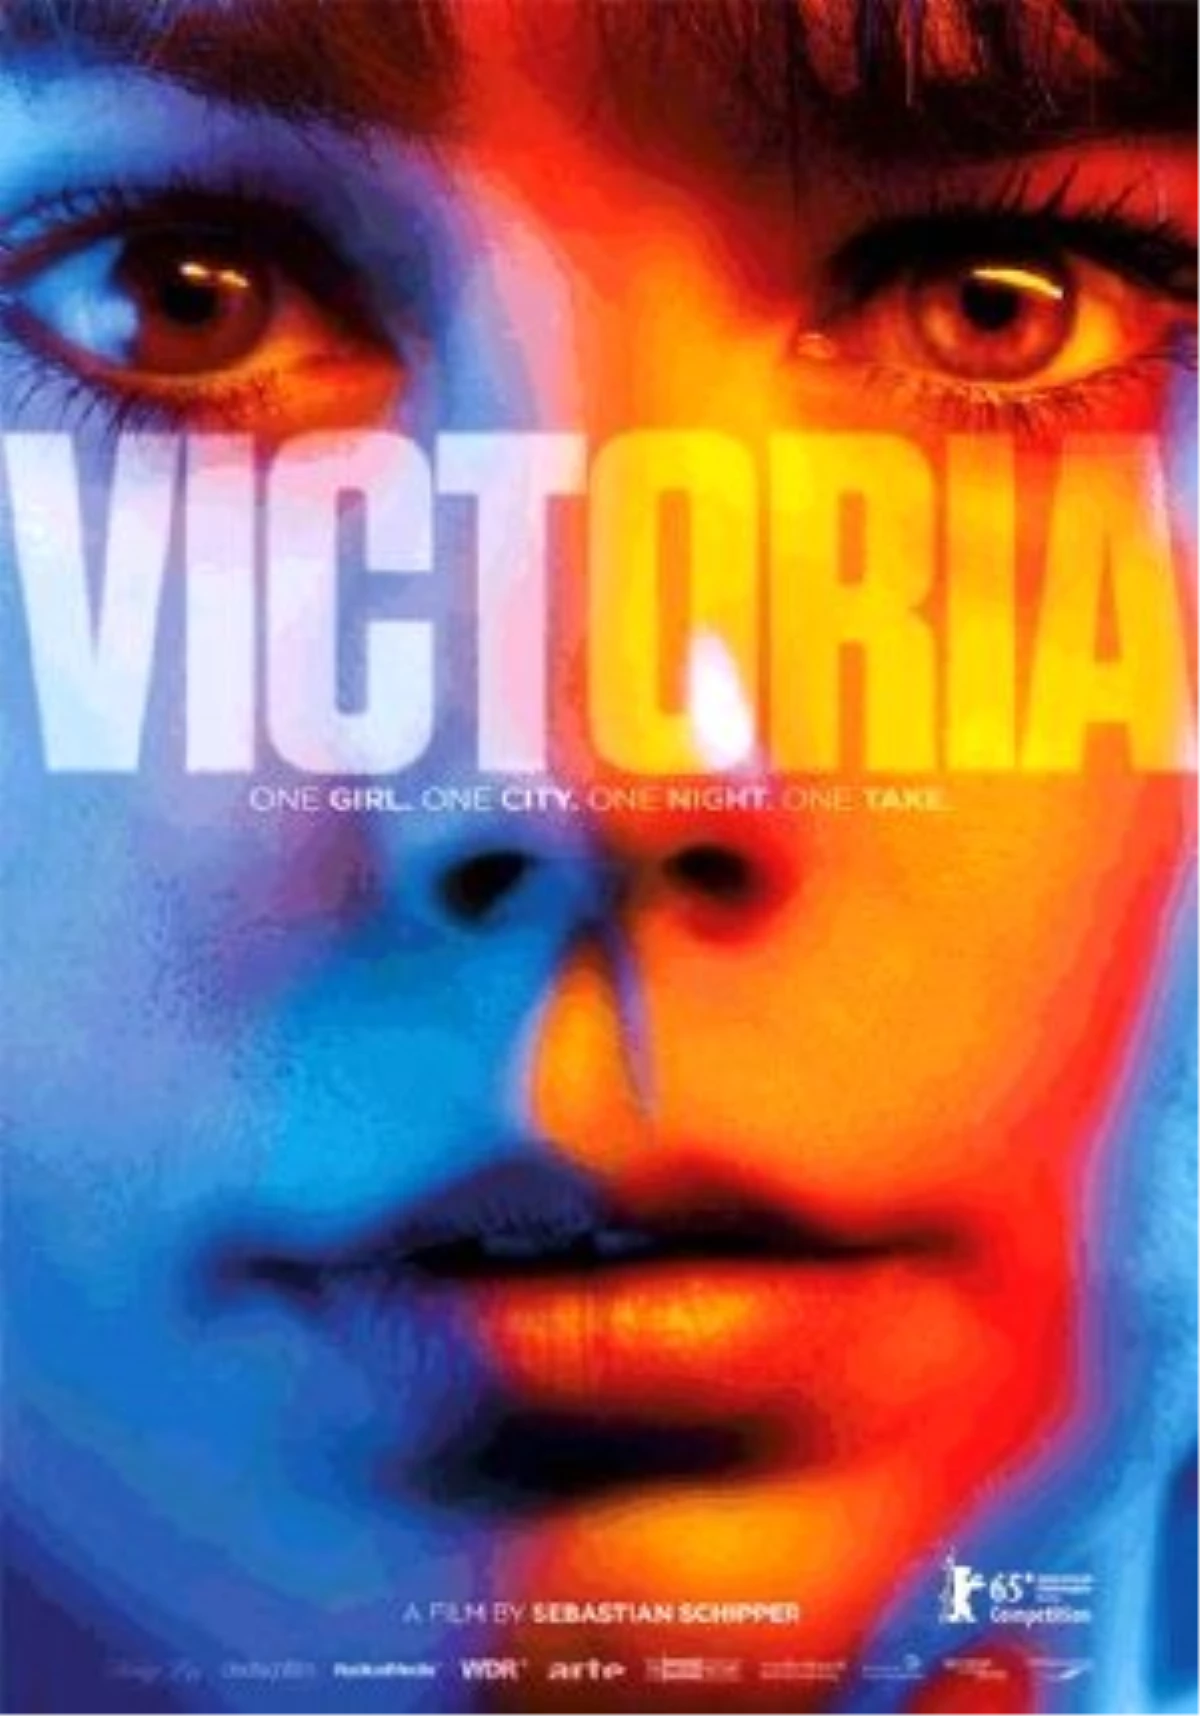 Victoria Filmi